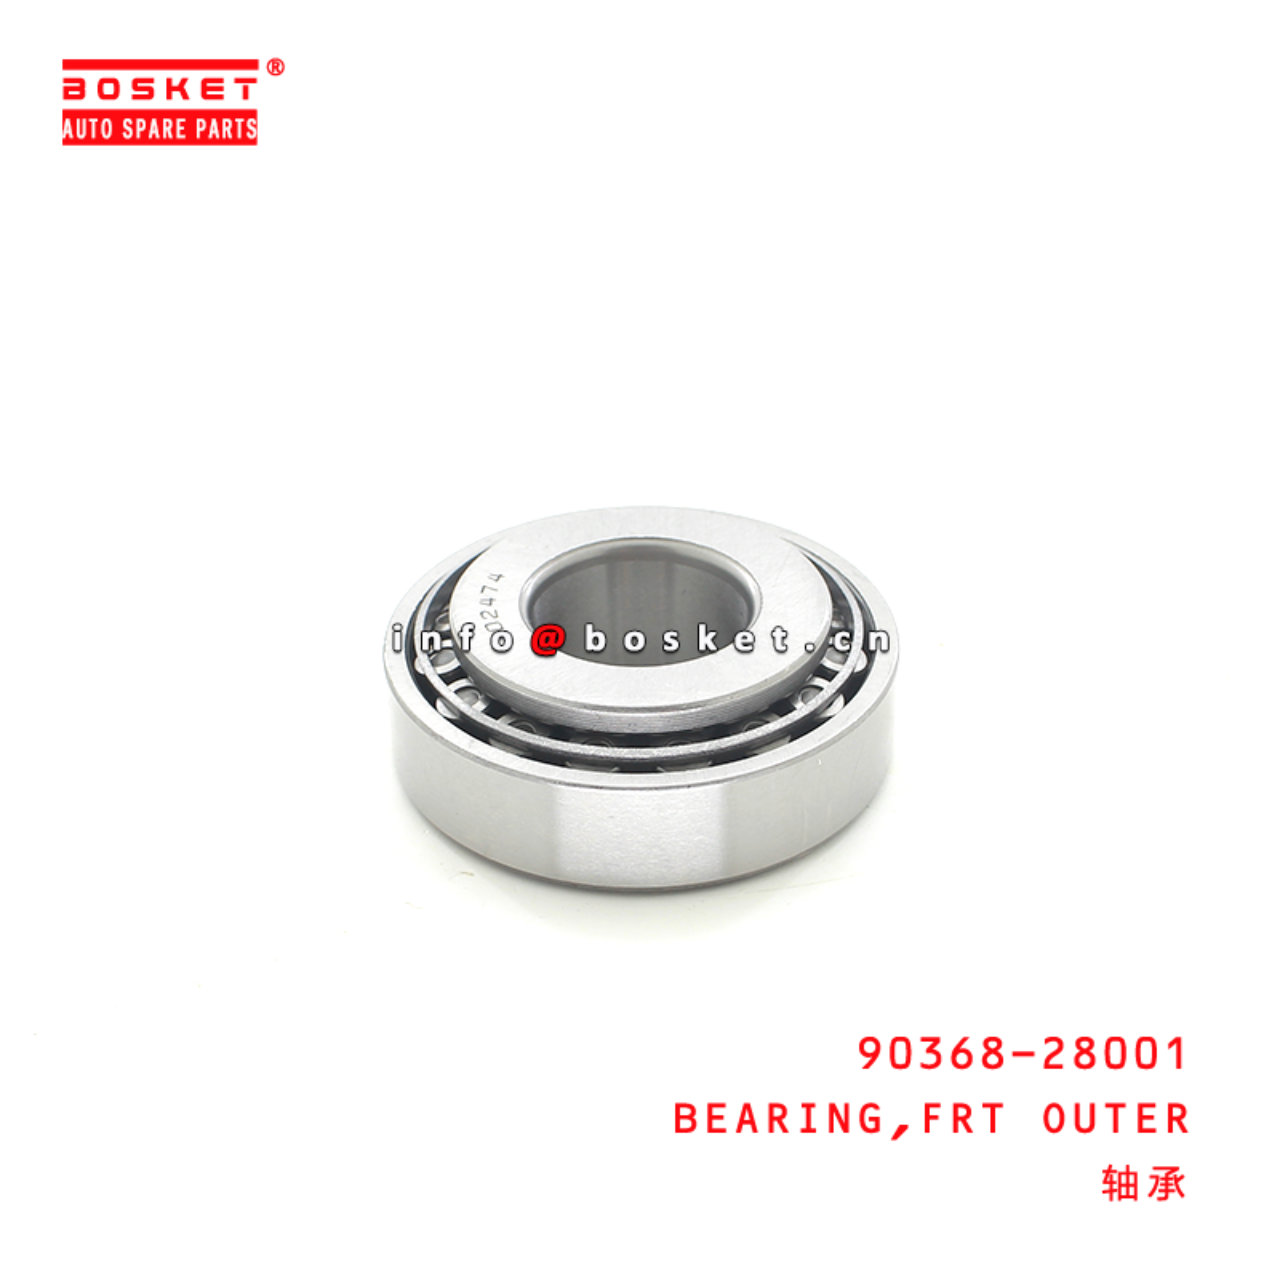 90368-28001 Tapered Bearing Suitable for ISUZU HINO700